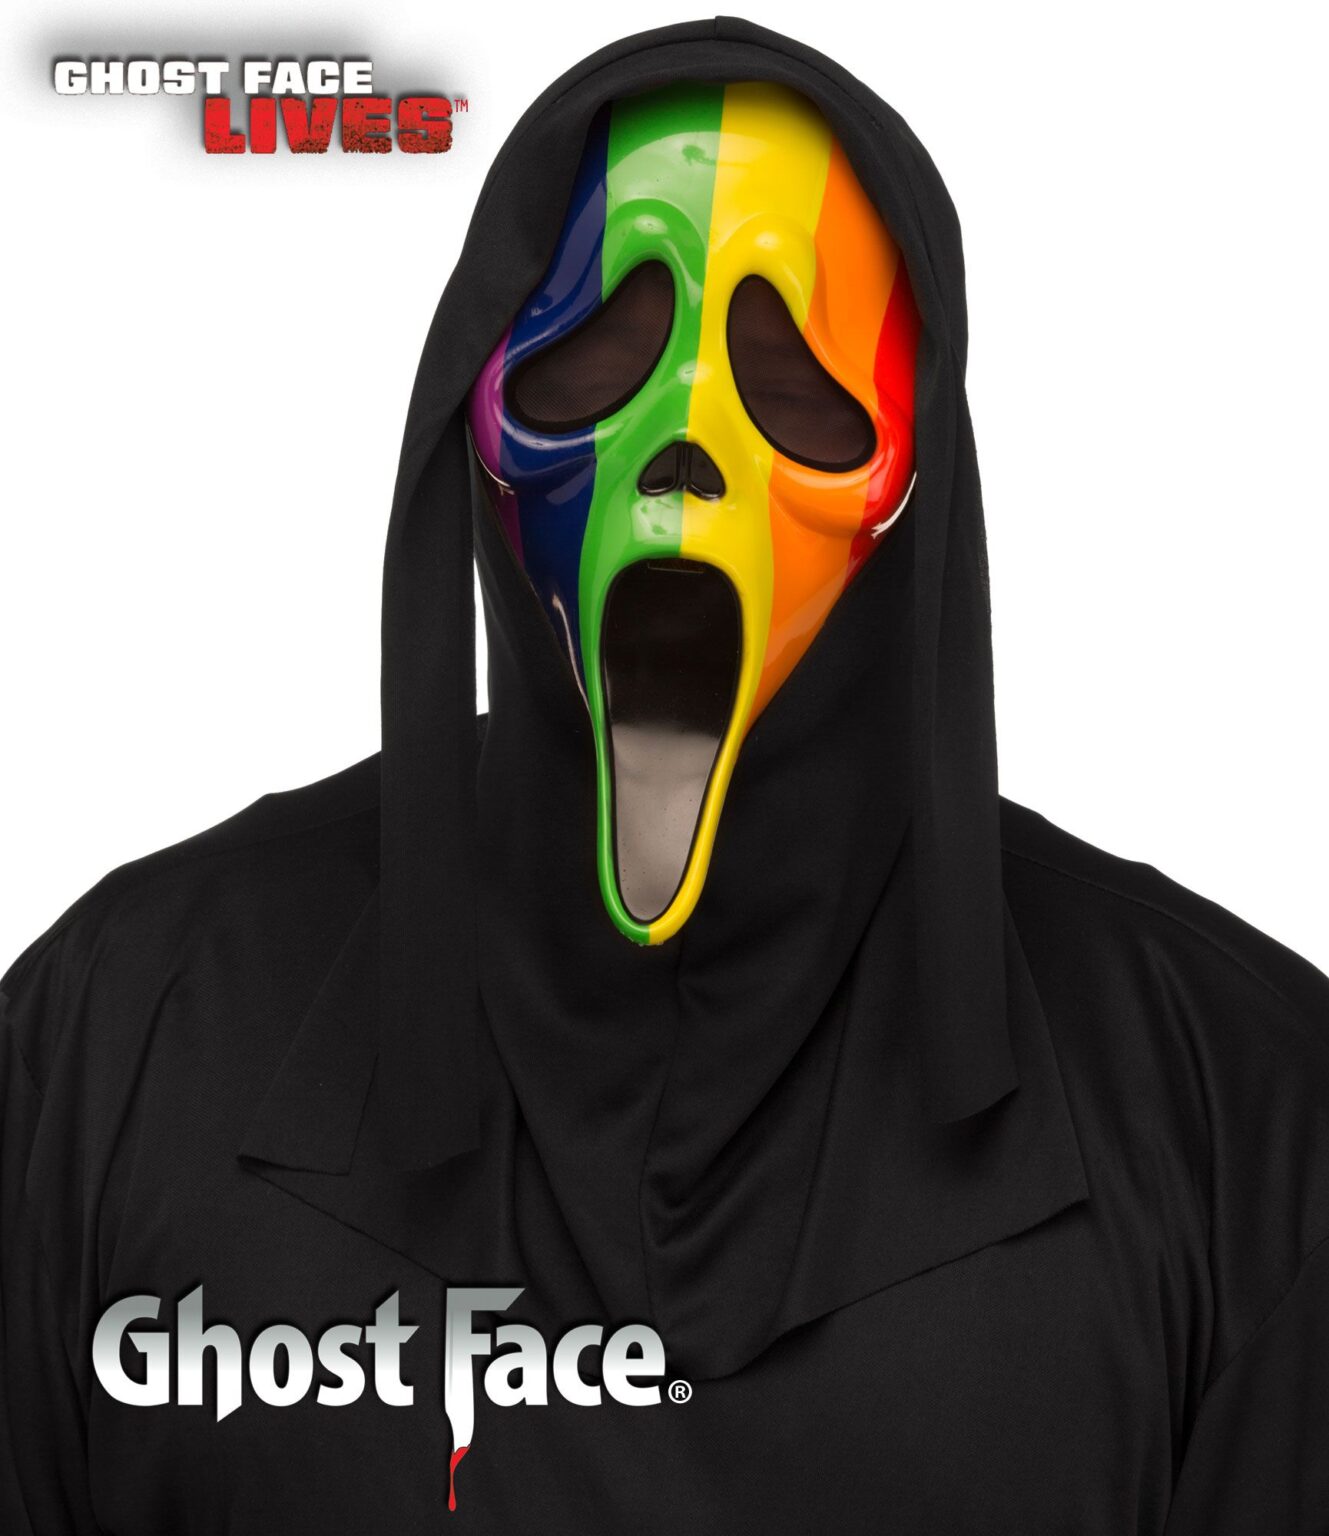 Ужасы про маску. Маска костюм призрачное лицо.